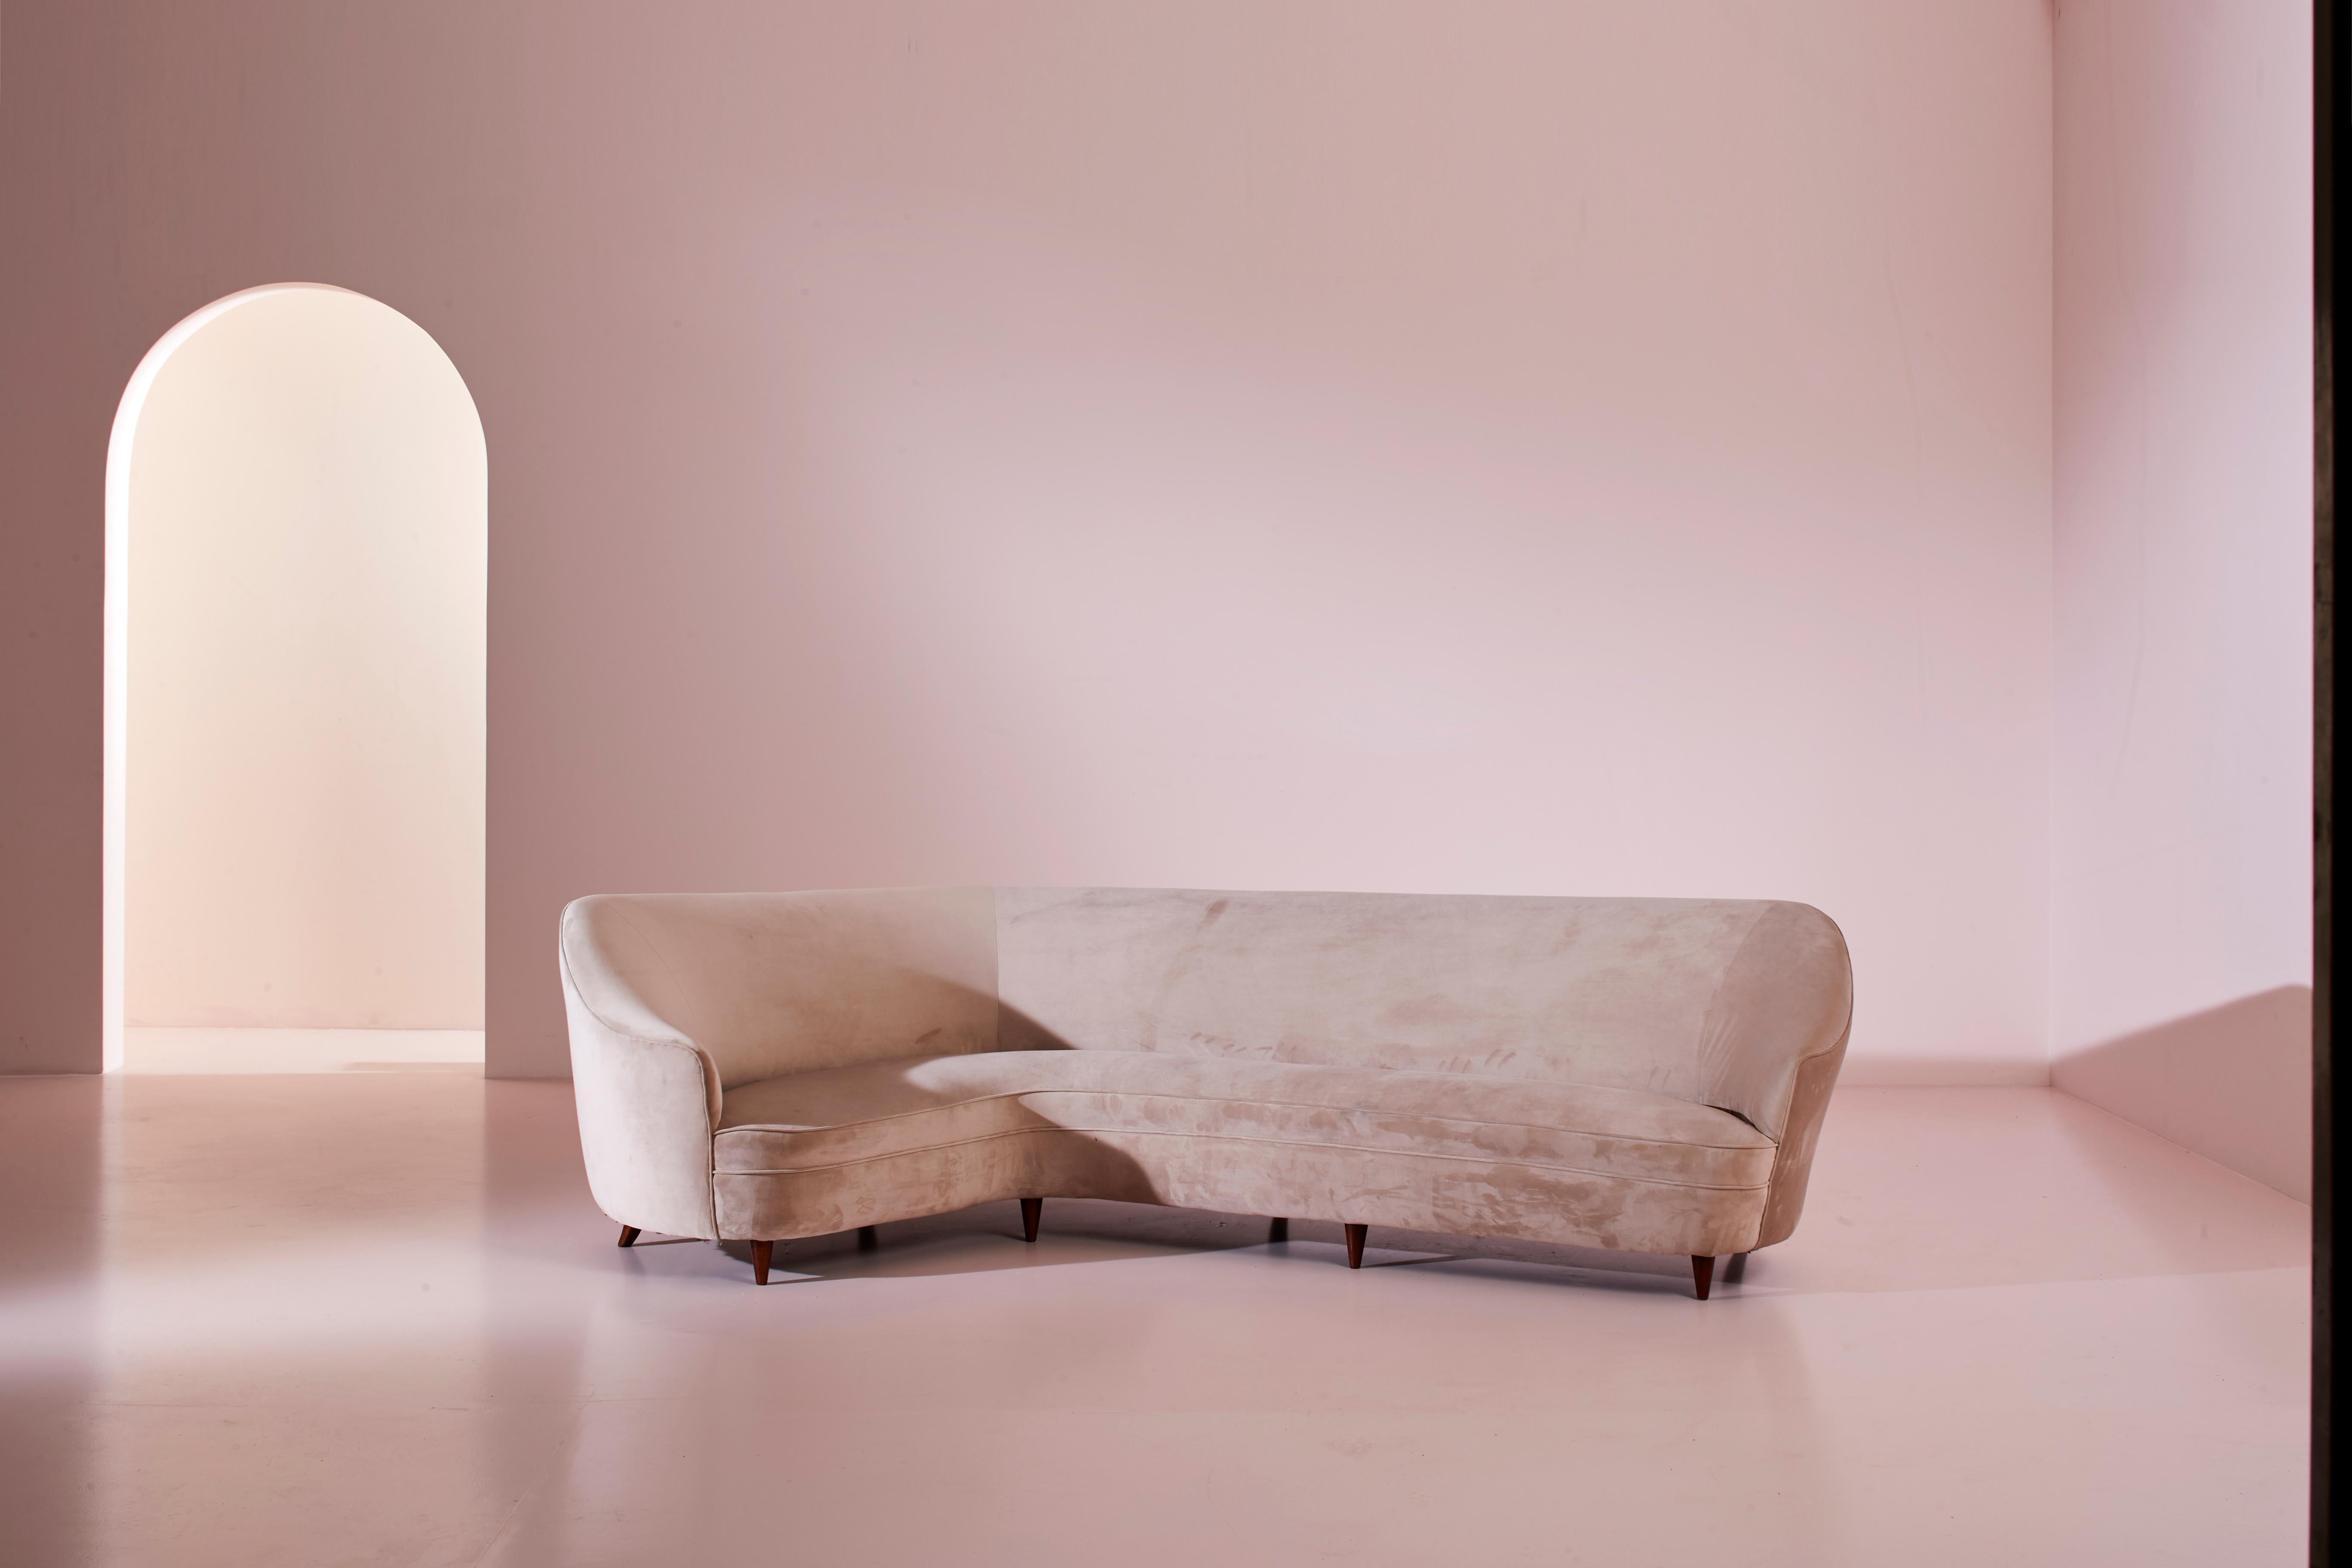 Ein seltenes und schönes geschwungenes Sofa mit Holzrahmen und Stoffbezug, entworfen von Gio Ponti für 